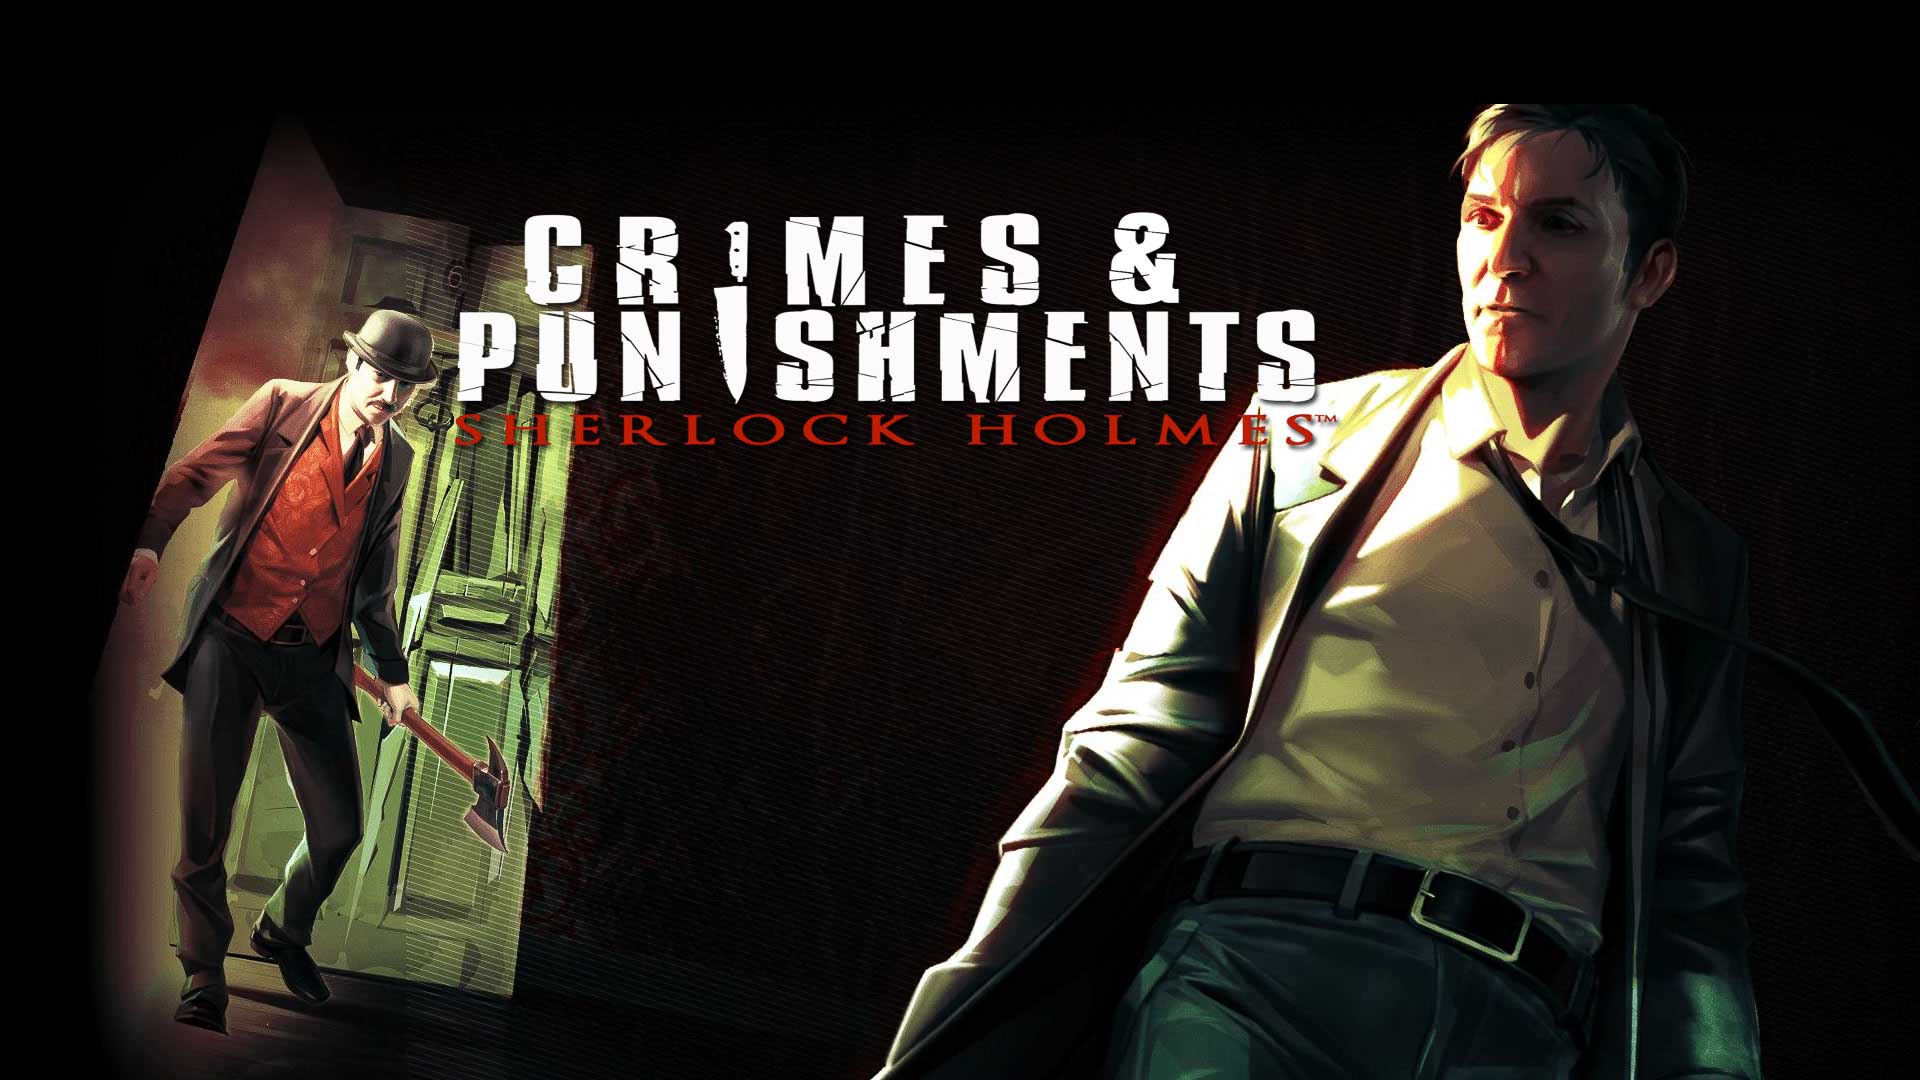 Game cực hay 1 thời Sherlock Holmes: Crimes and Punishments sắp được phát hành miễn phí trên Epic Games Store